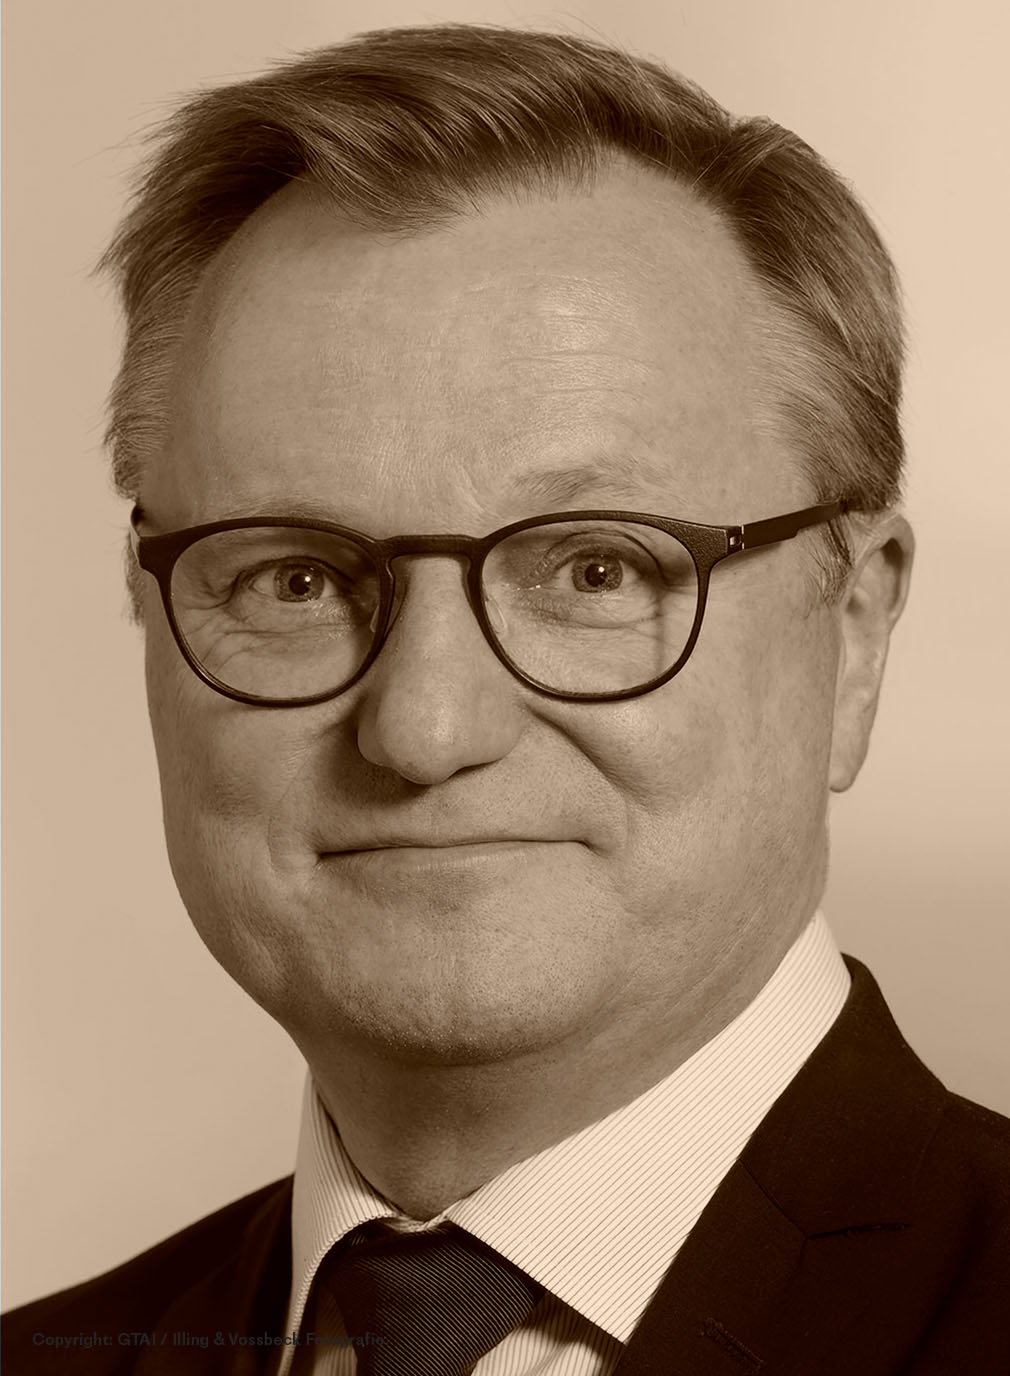 Peter Trillingsgaard